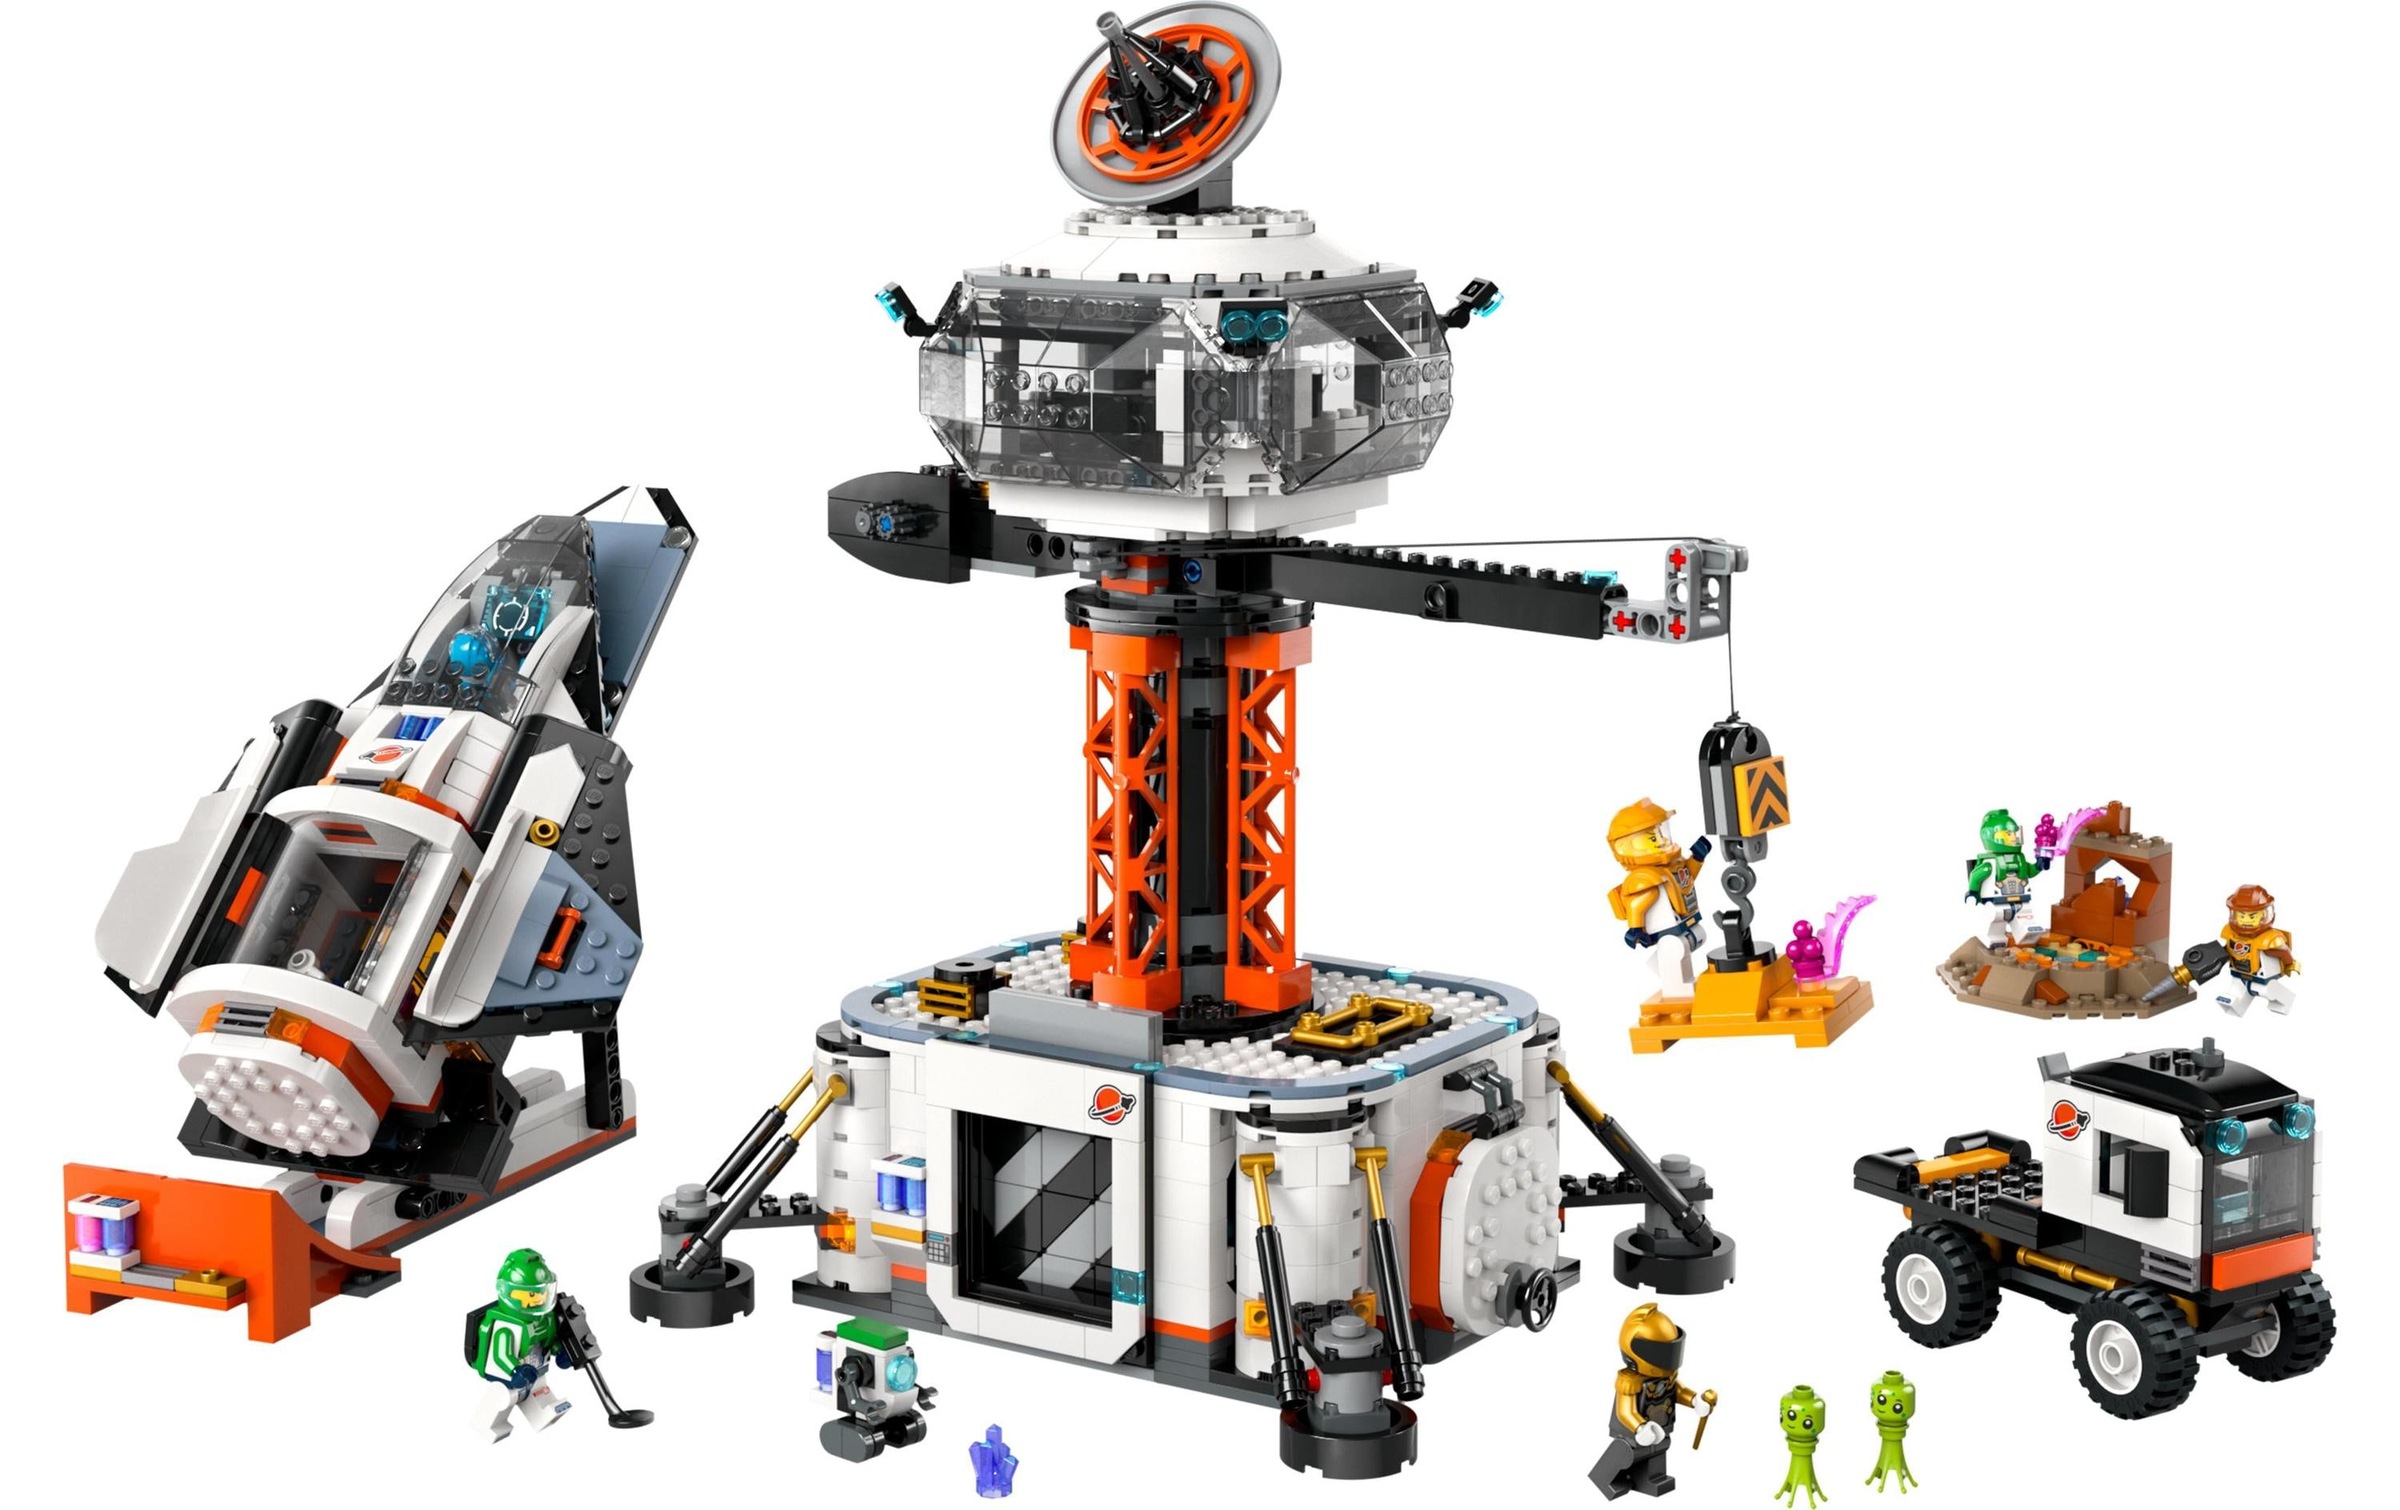 LEGO® Spielbausteine »Raumbasis mit Startrampe 60434«, (1422 St.)